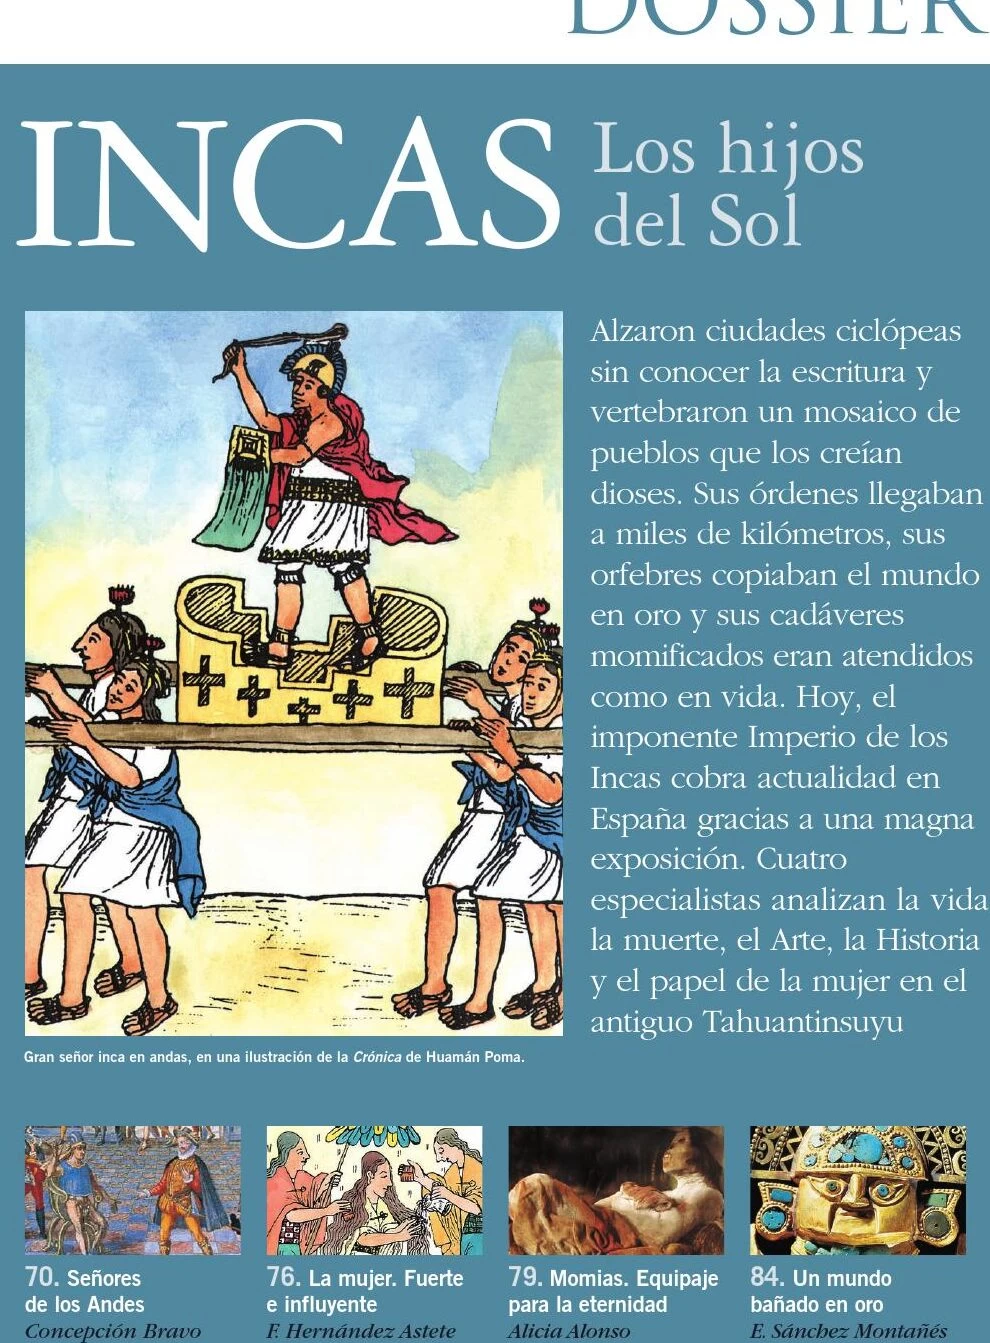 La importancia del oro y la plata para los incas